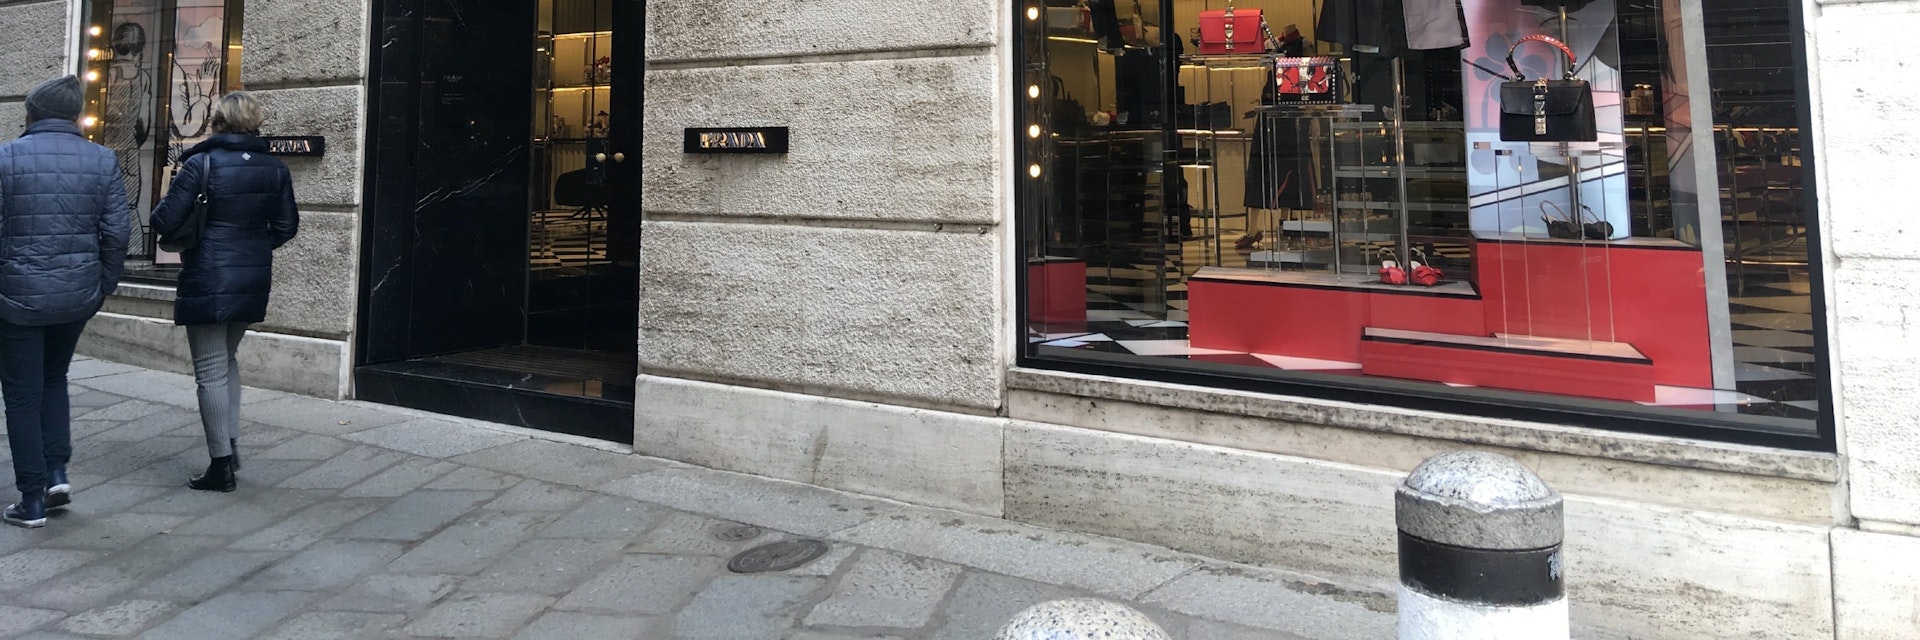 Prada shop front in Quadrilateral del’Oro